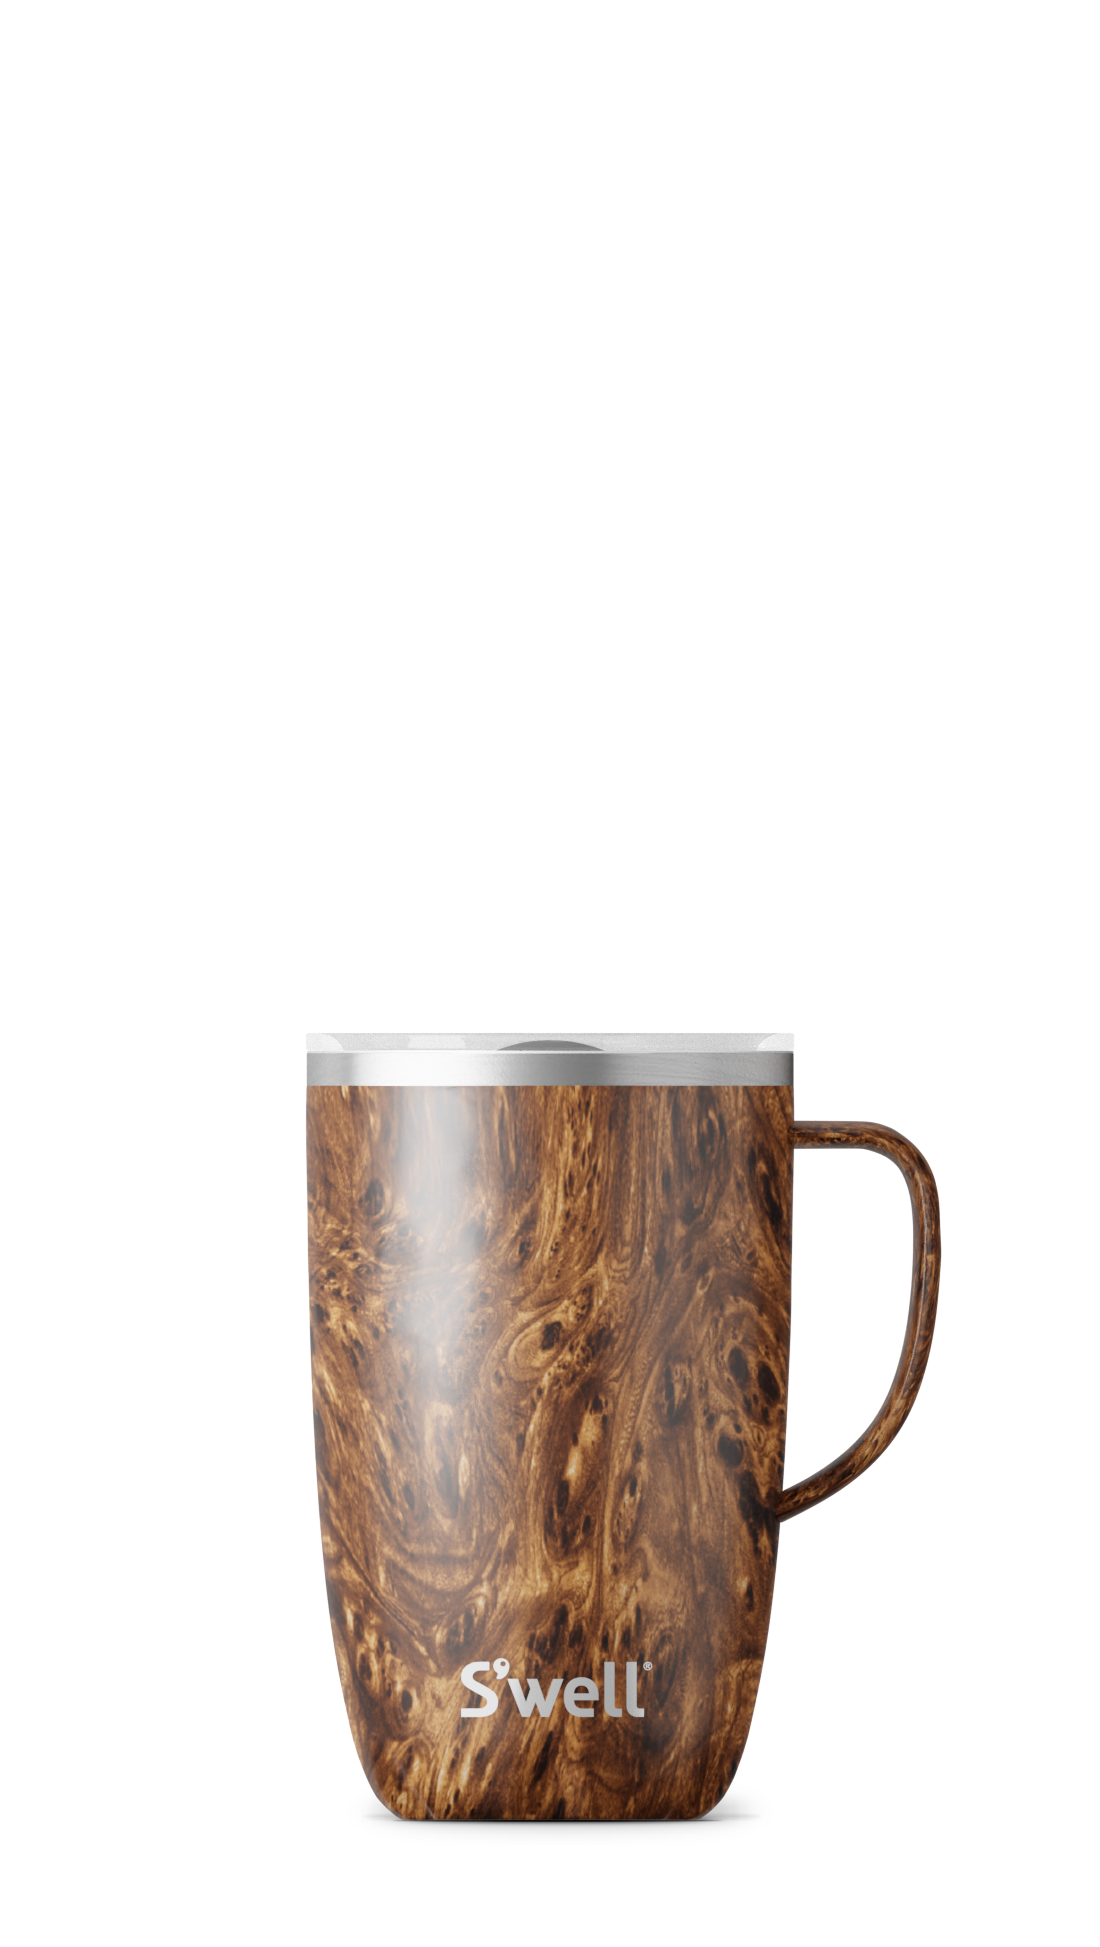 Teakwood Mug With Handle - 16 oz